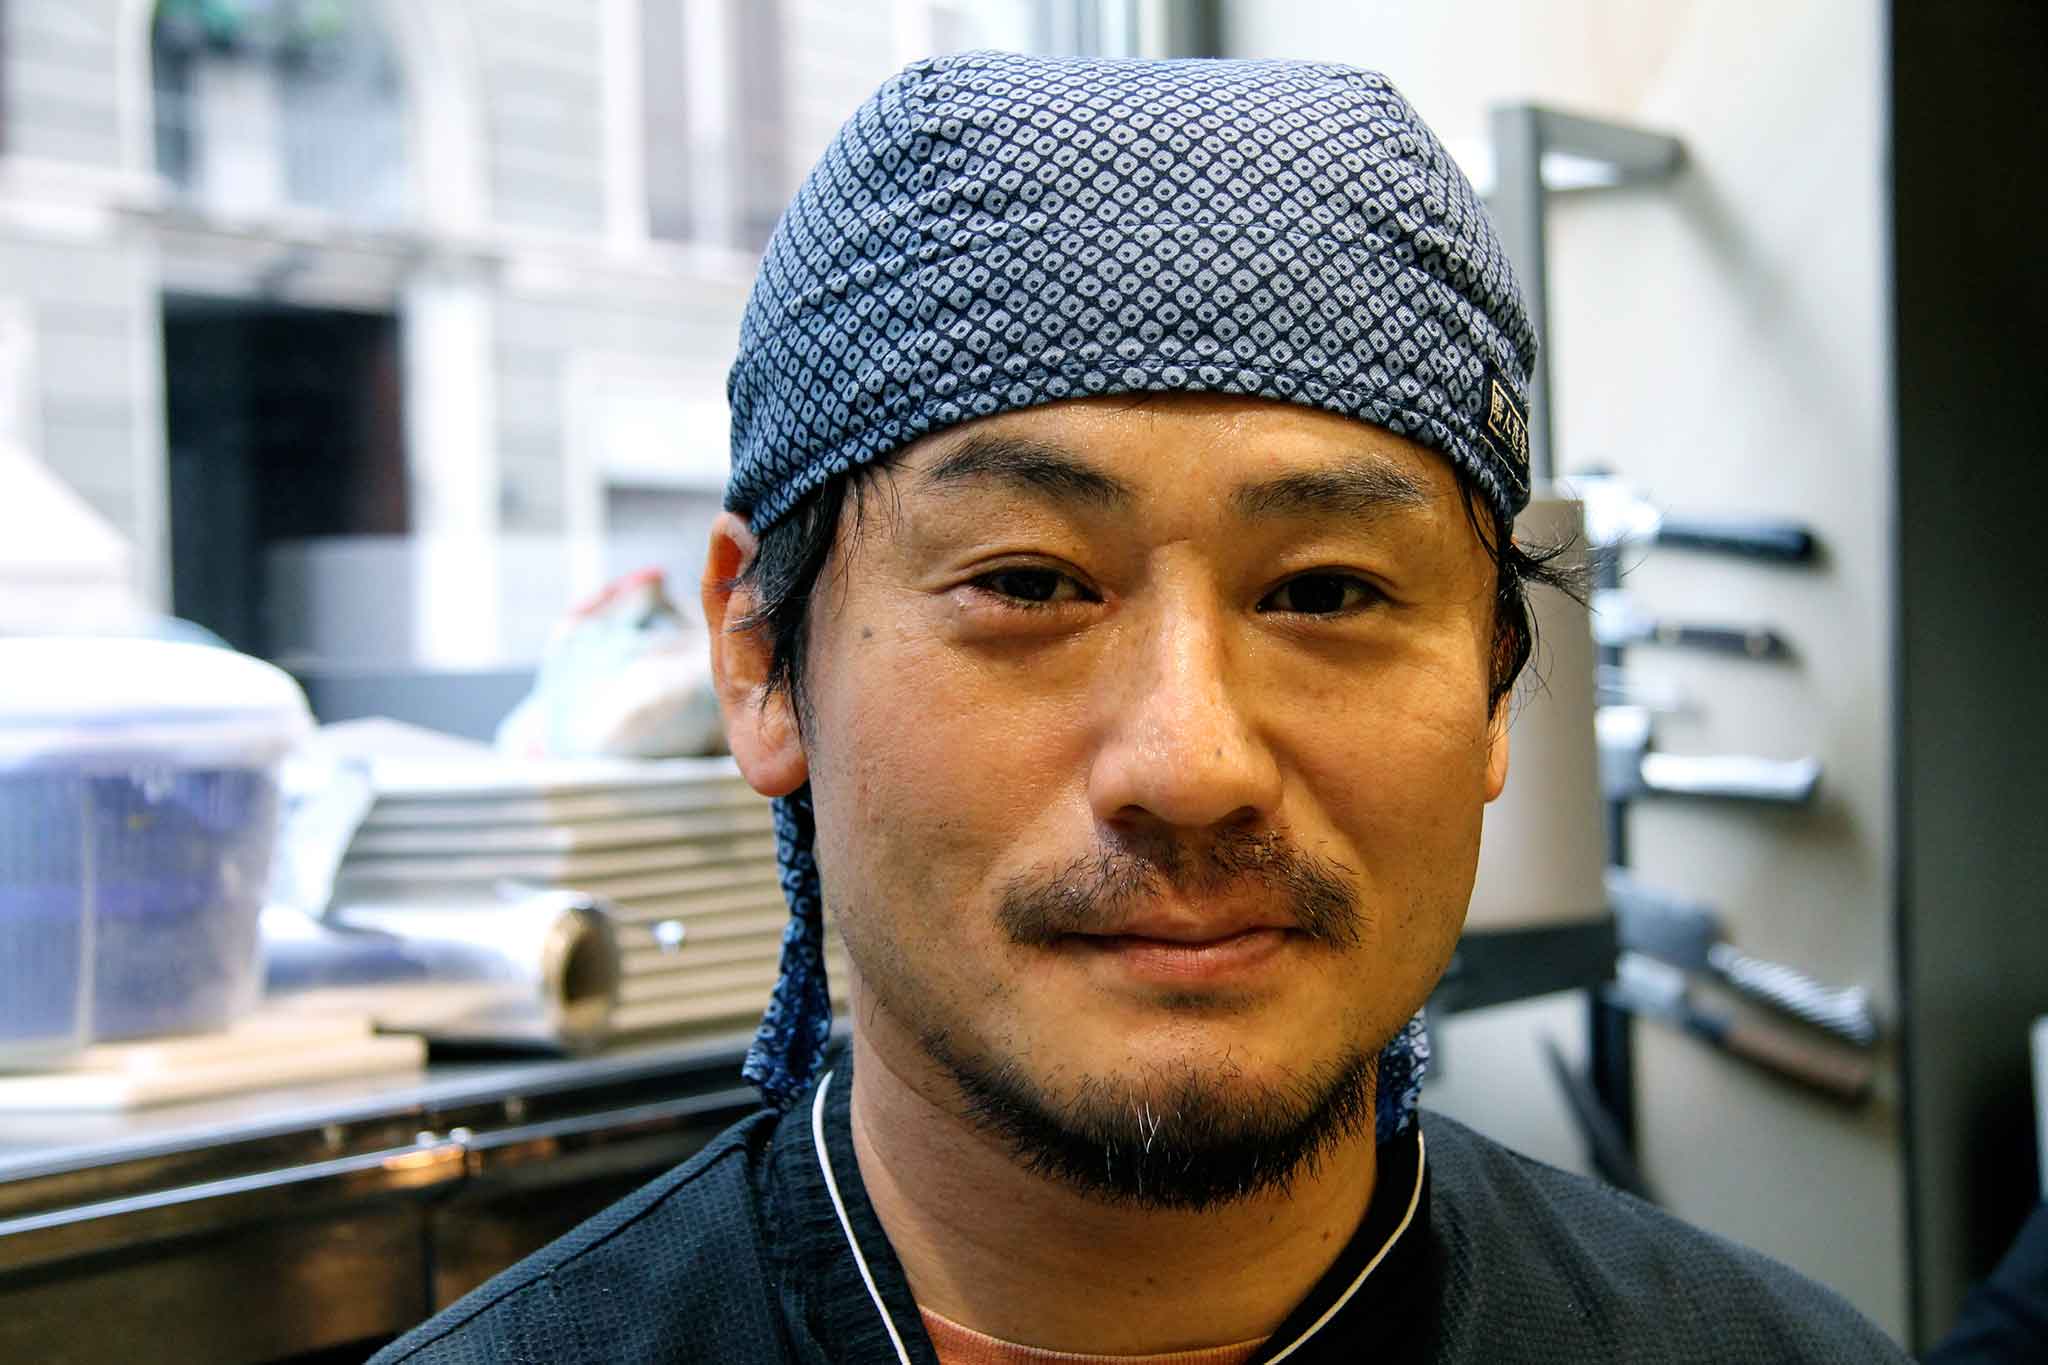 milano gong chef Keisuke Koga